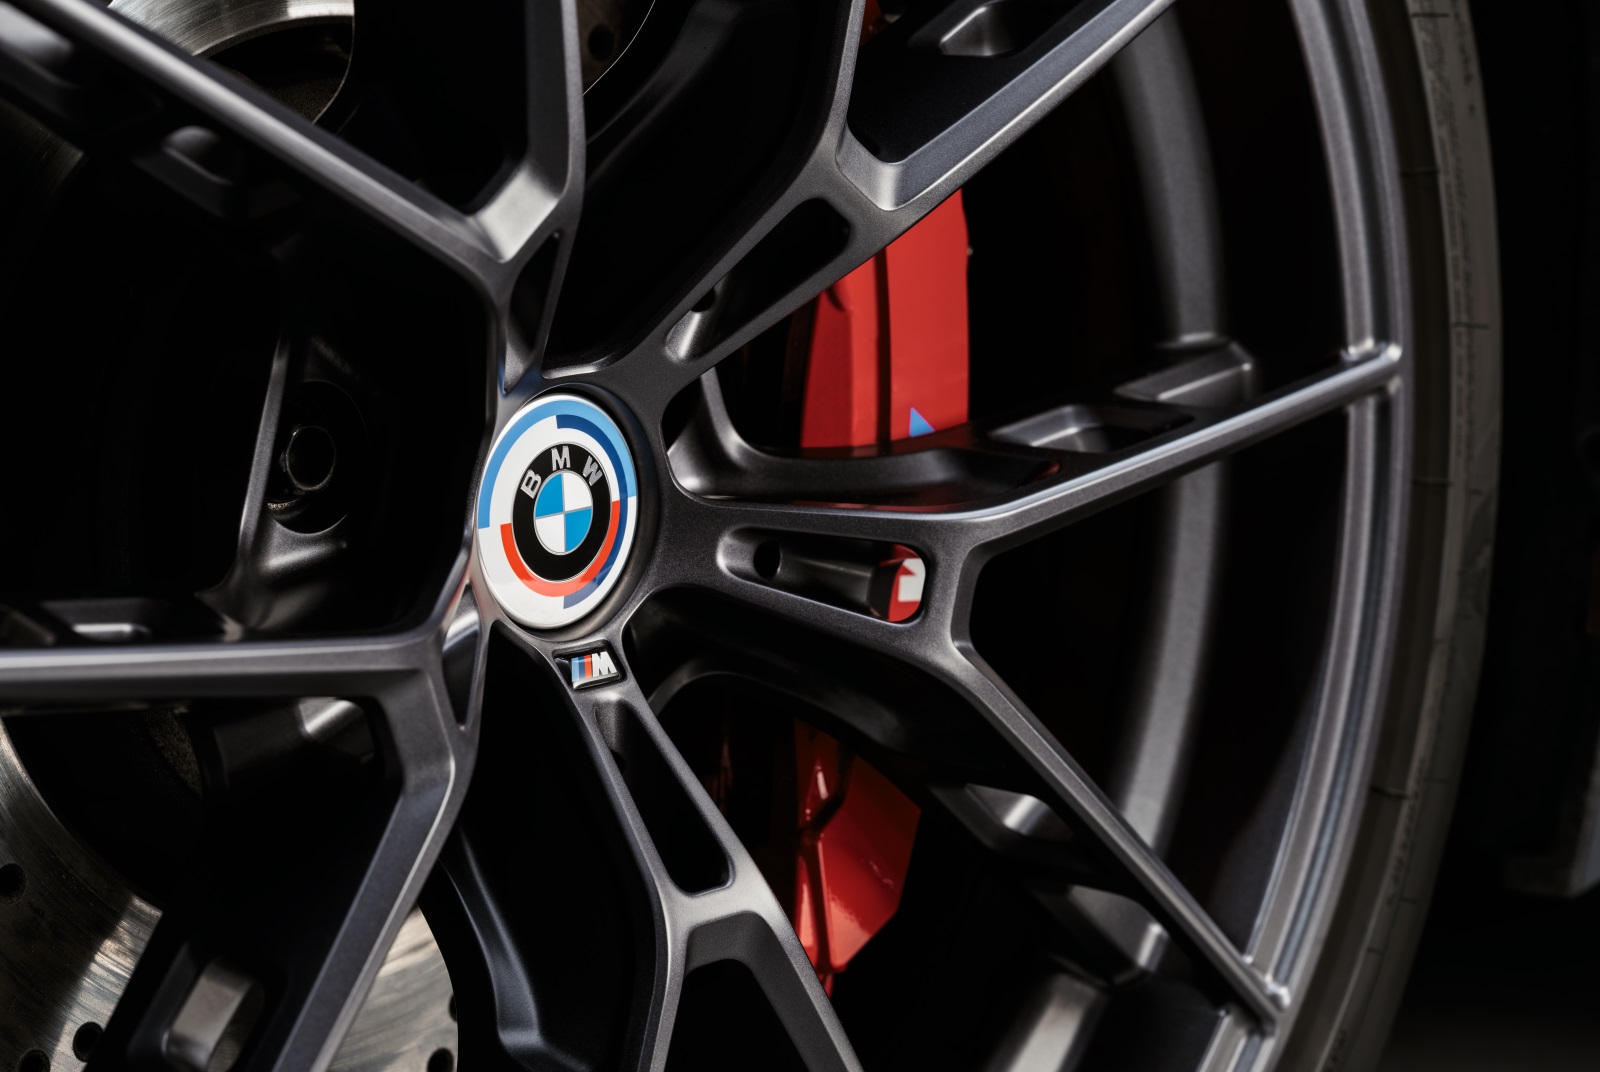 [新聞照片三] 適逢BMW M 50週年，特別推出BMW M 50週年輪圈中心蓋，重現象徵BMW M 三色的藍、紅、紫經典配色，展現搶眼有型.jpg